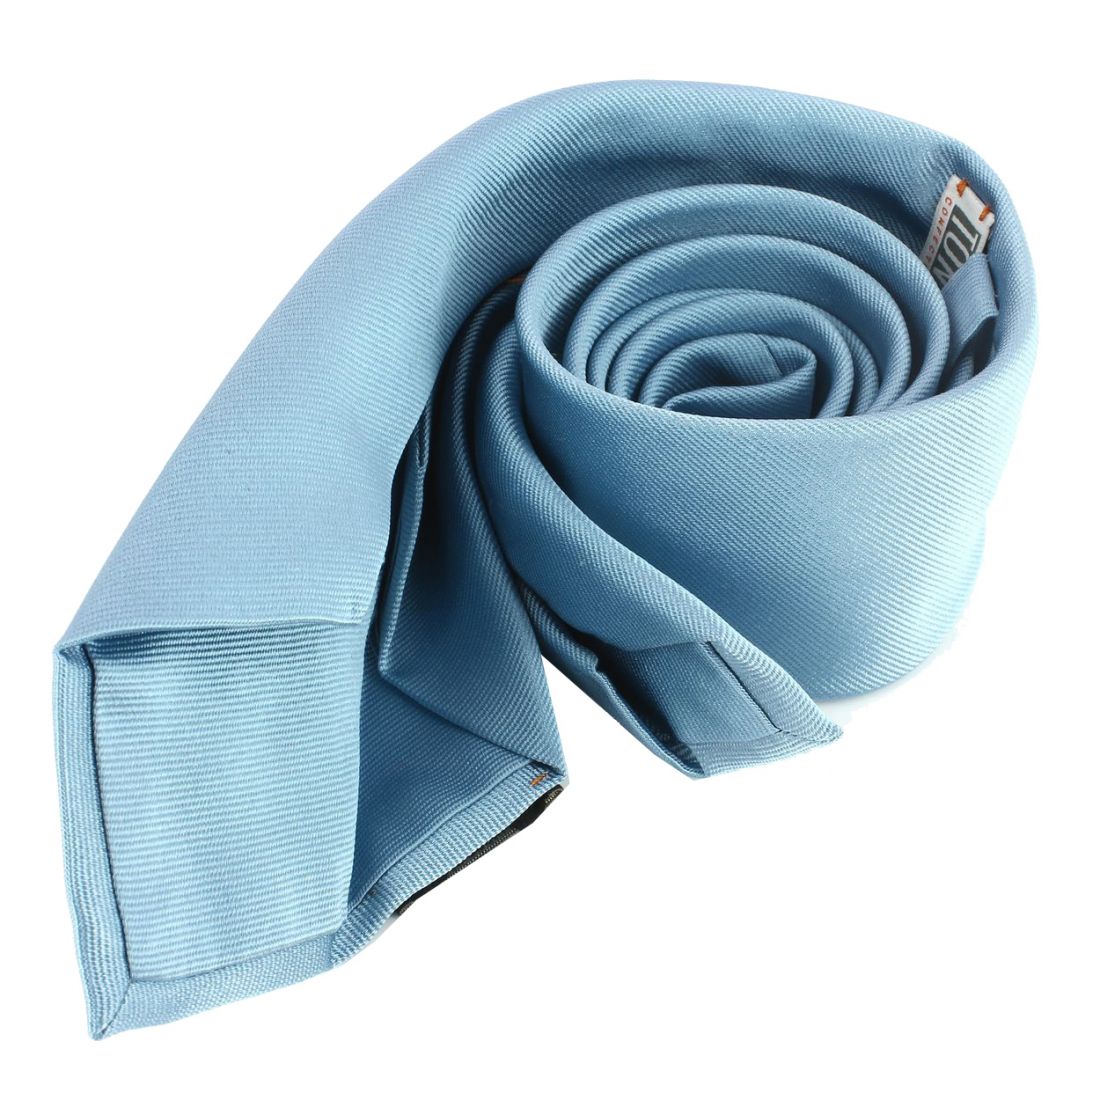 Cravate 6 plis Tony & Paul confection main Bleu tibre Soie Uni Homme